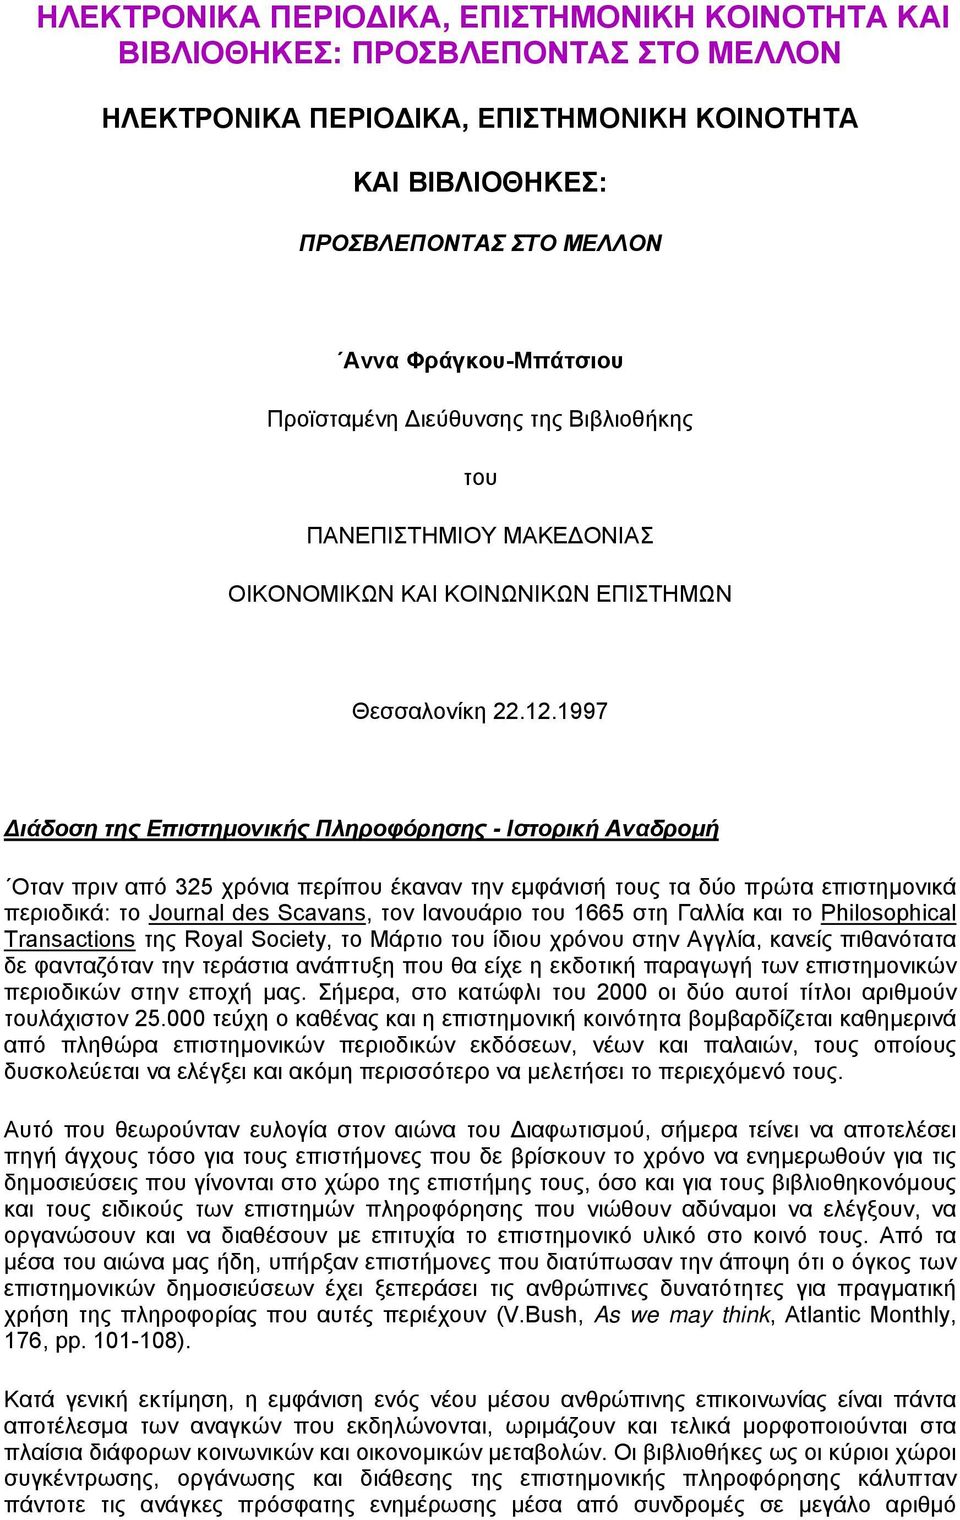 1997 ιάδοση της Επιστηµονικής Πληροφόρησης - Ιστορική Αναδροµή Οταν πριν από 325 χρόνια περίπου έκαναν την εµφάνισή τους τα δύο πρώτα επιστηµονικά περιοδικά: το Journal des Scavans, τον Ιανουάριο του